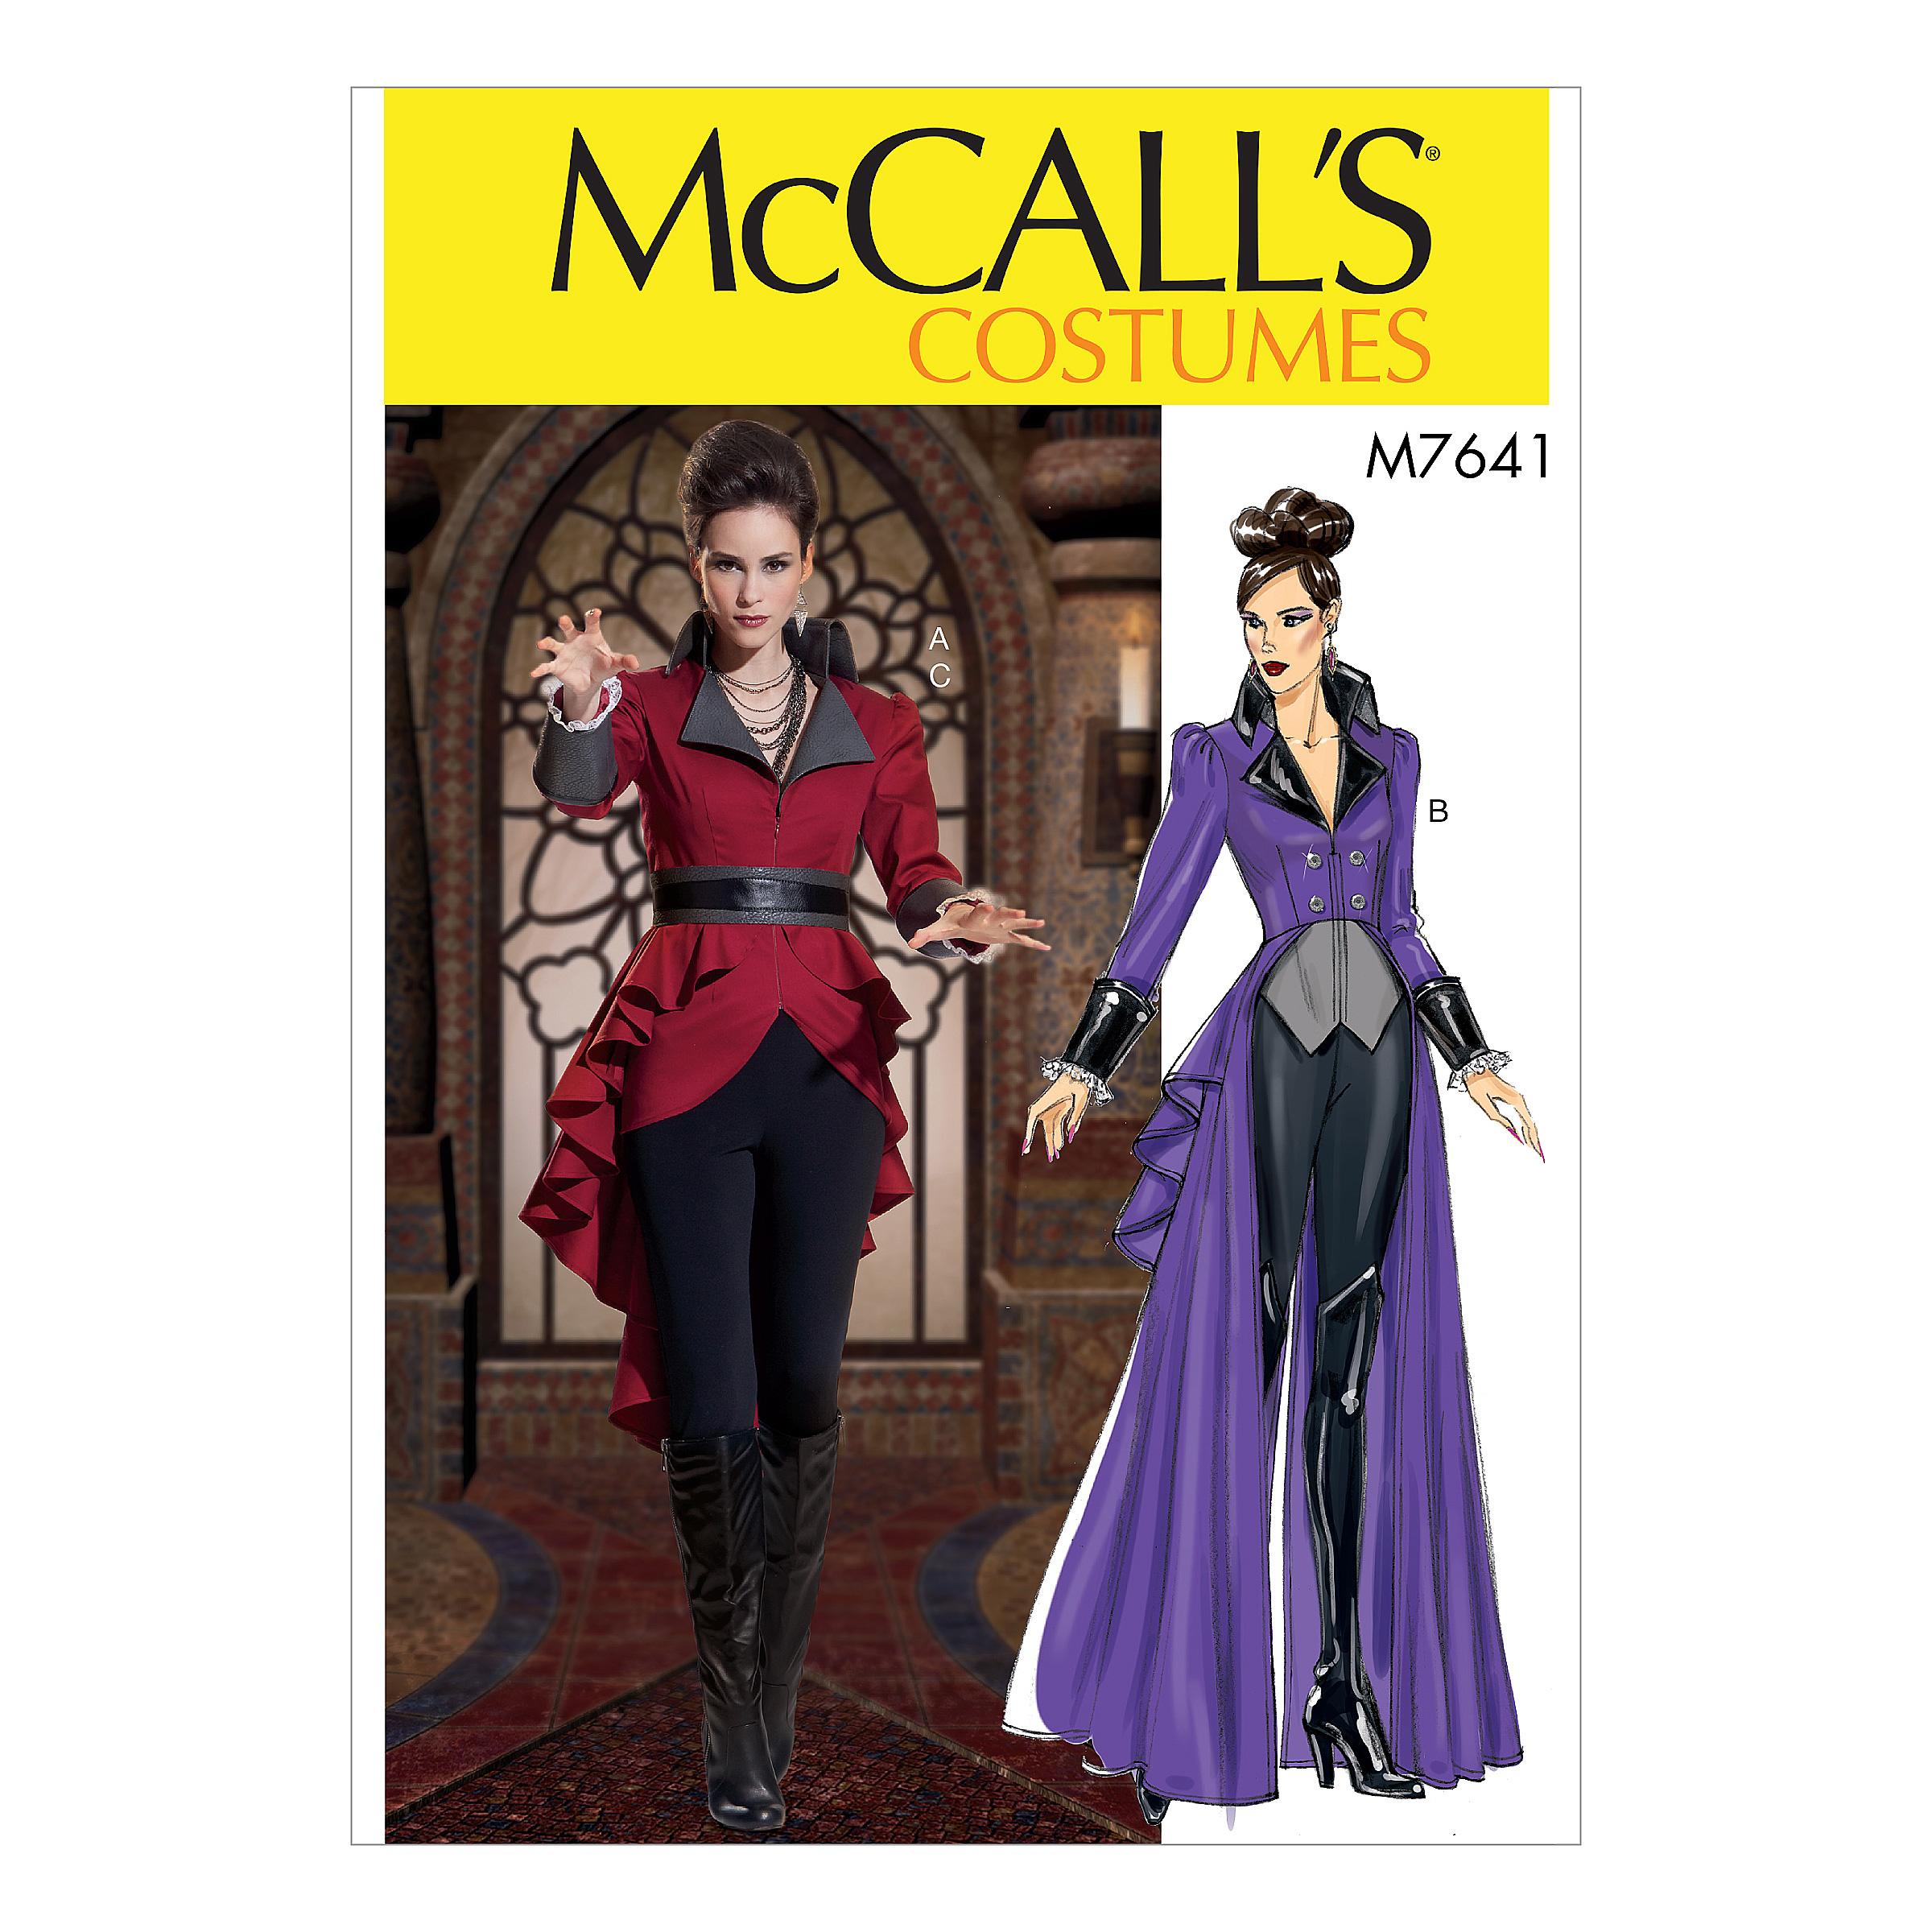 McCalls M7641 Costumes